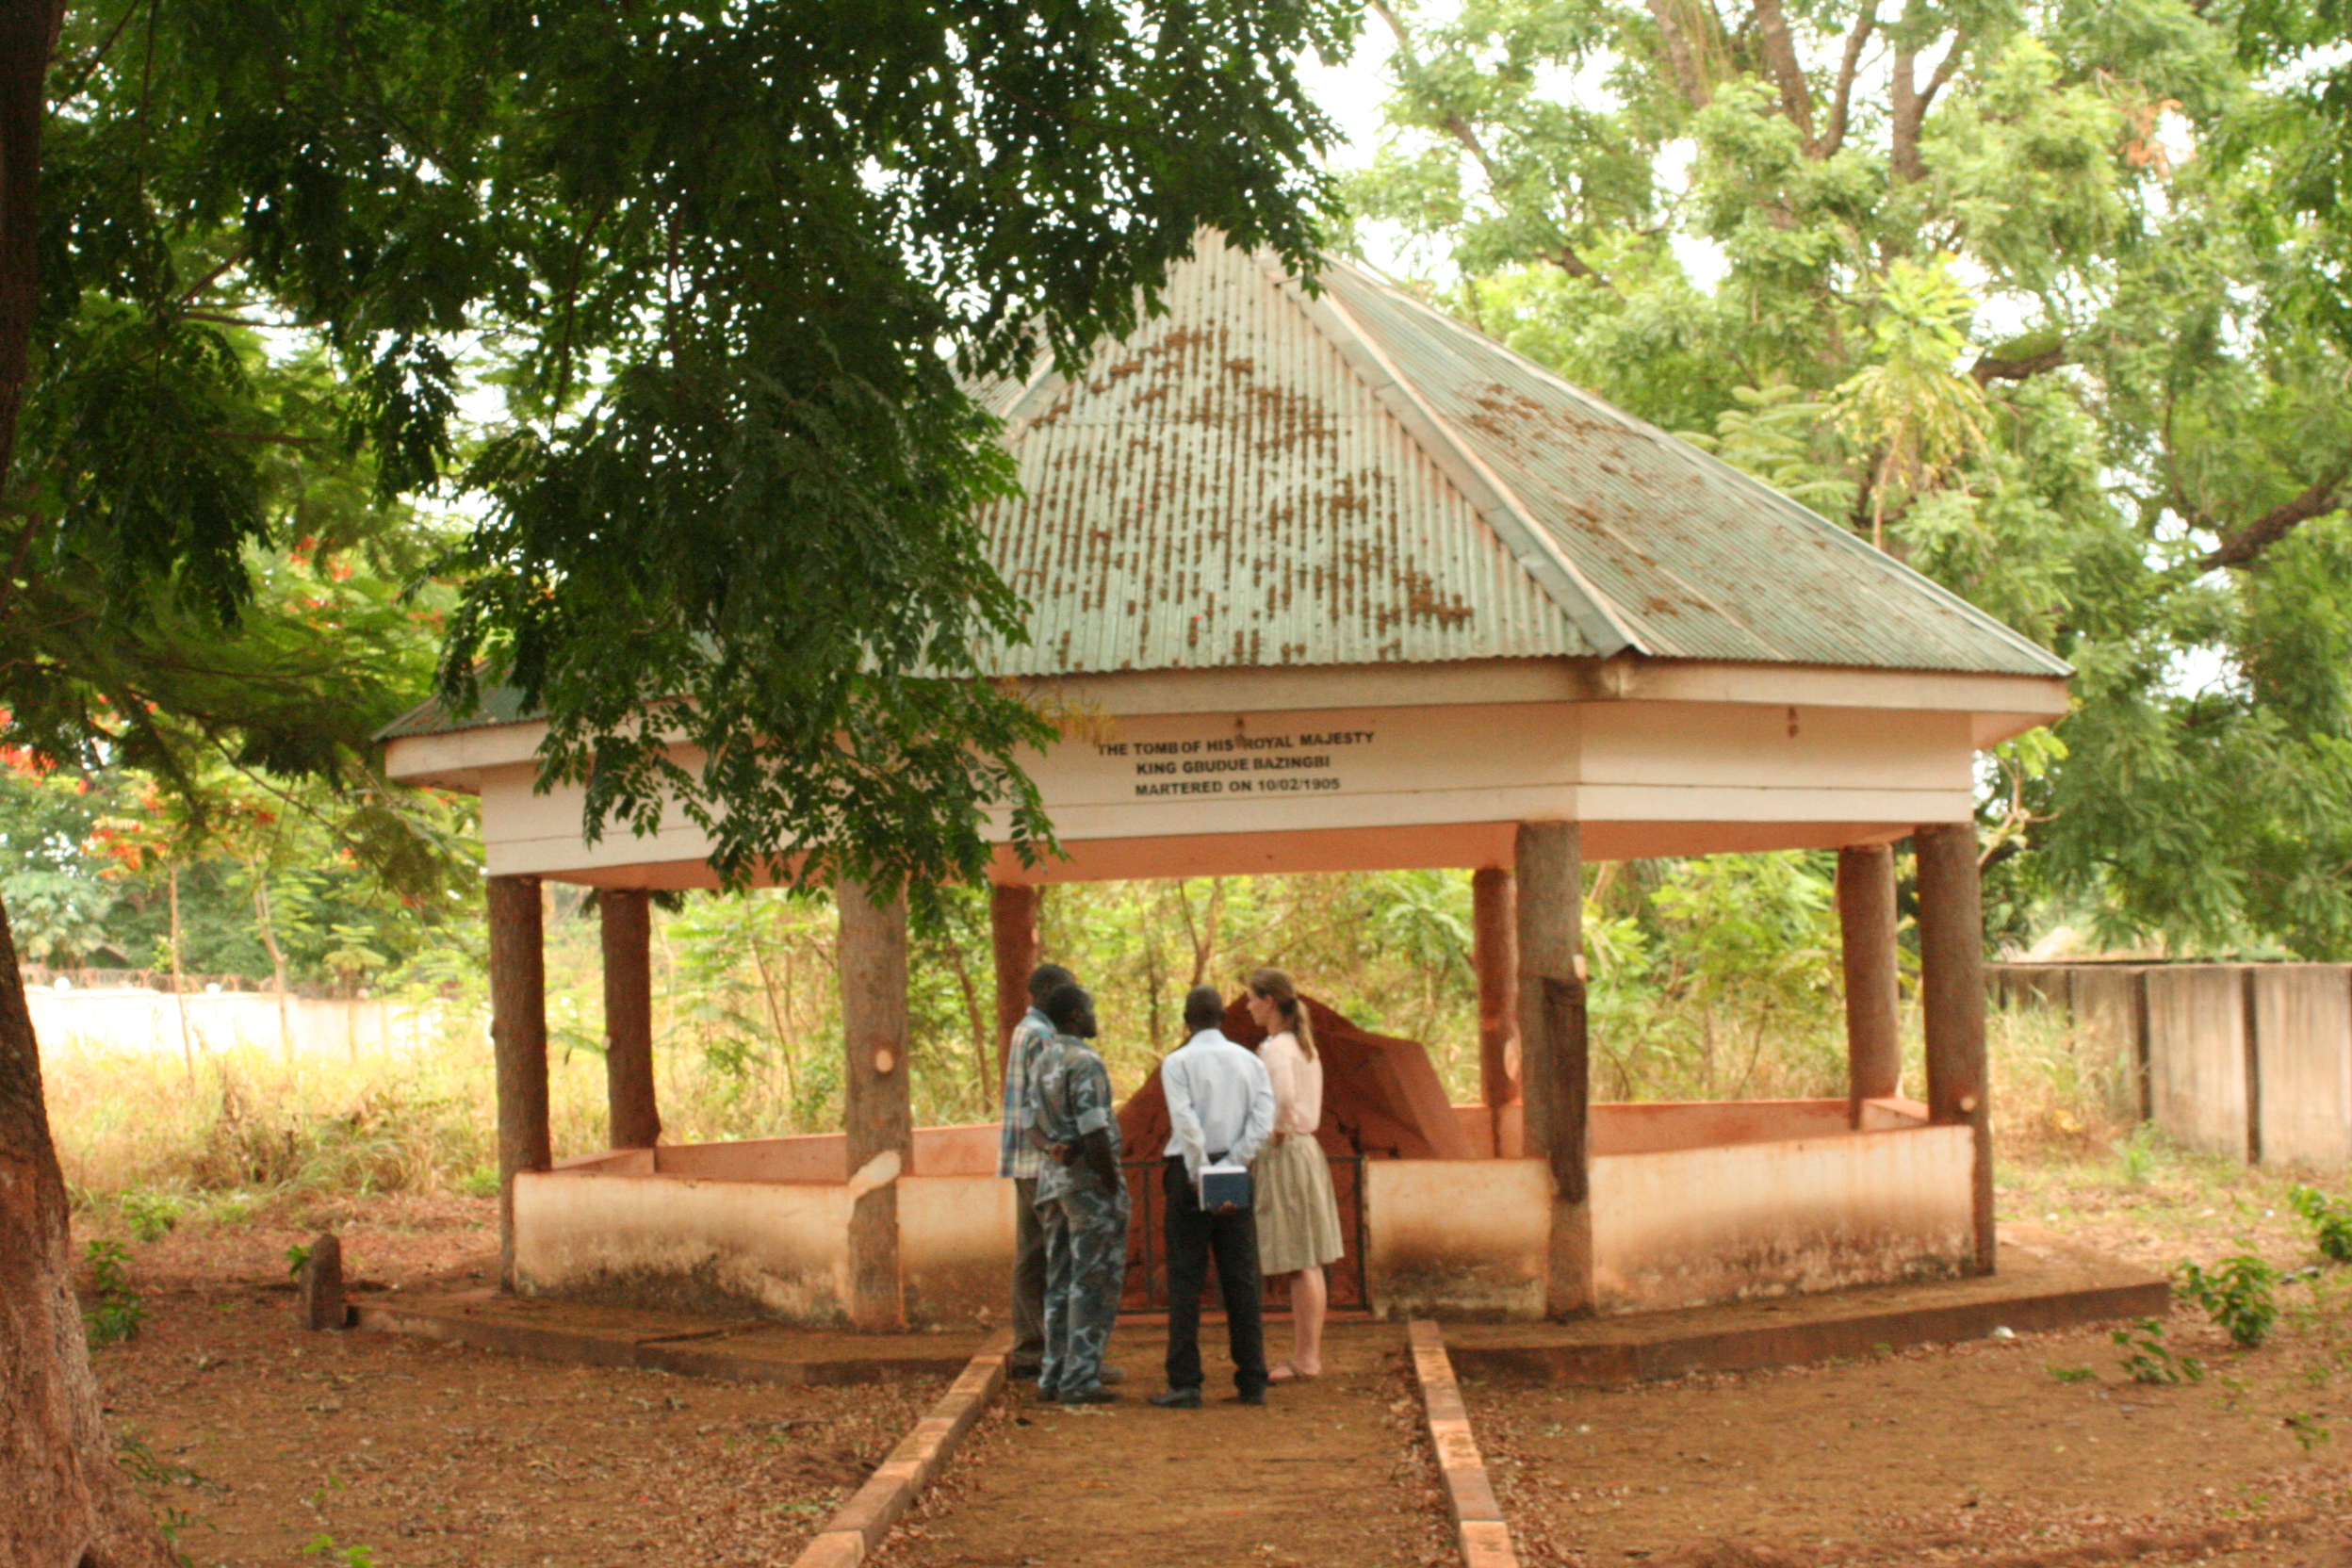 Gbudwe’s grave in 2013. Image courtesy of Atem el-Fatih